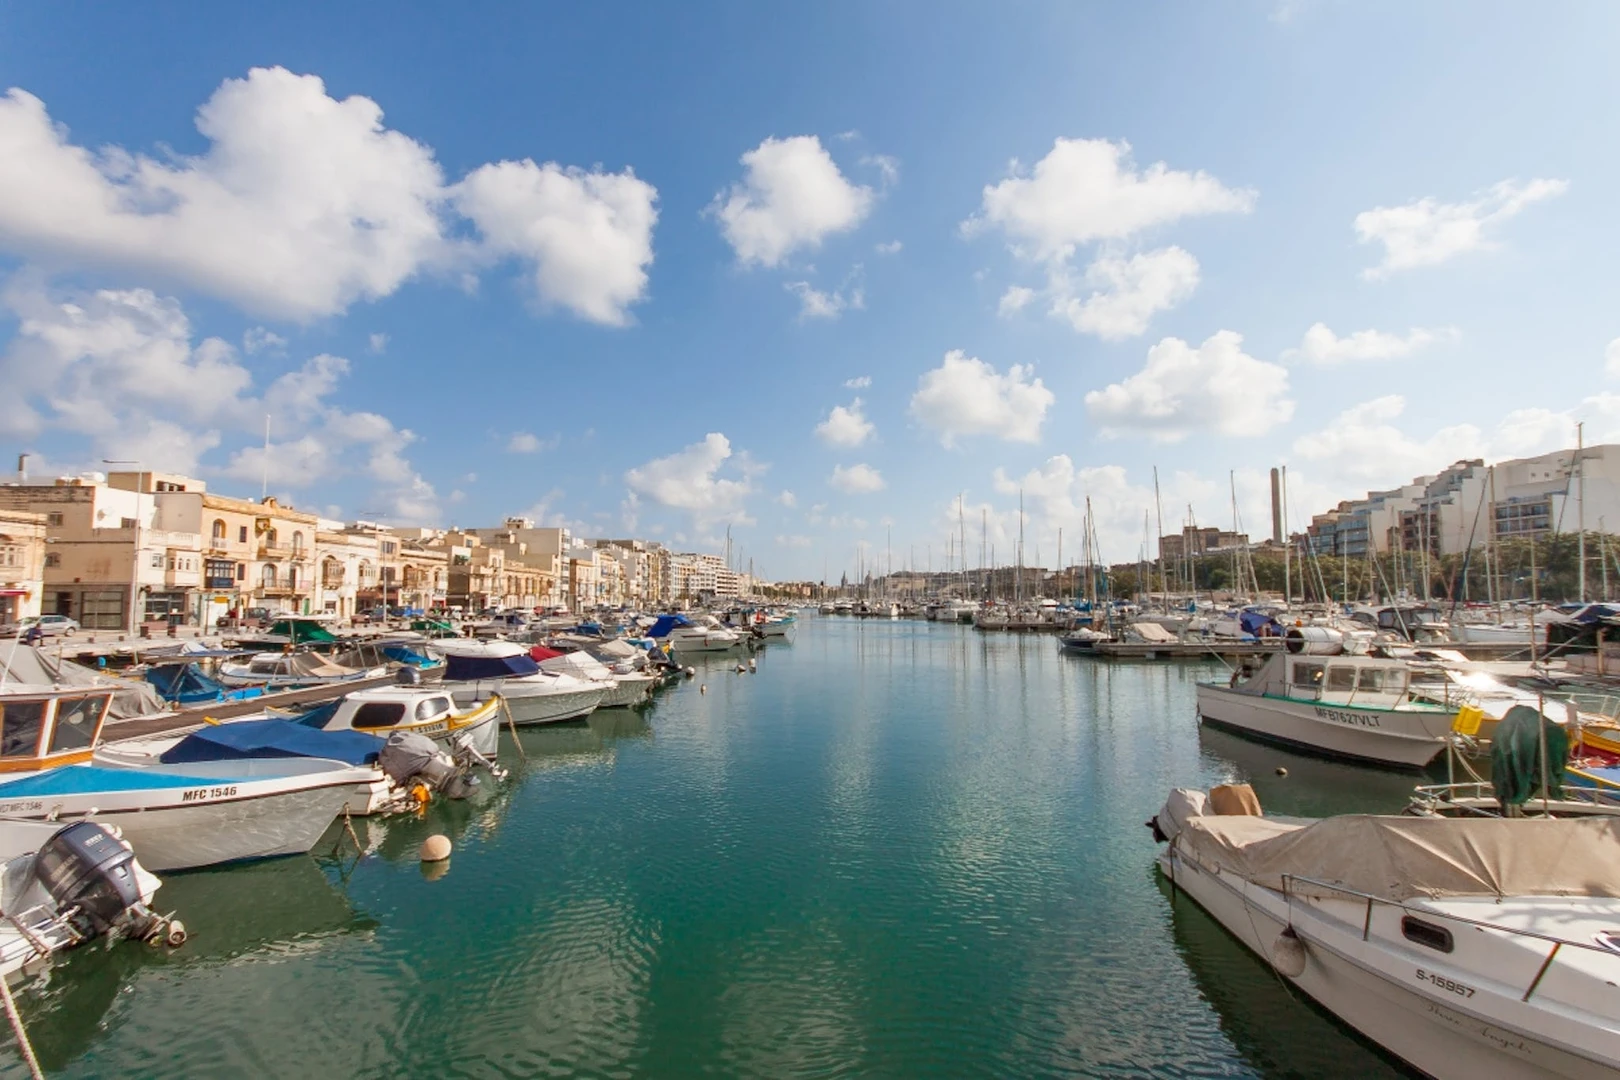 Apartamento moderno e brilhante em Malta